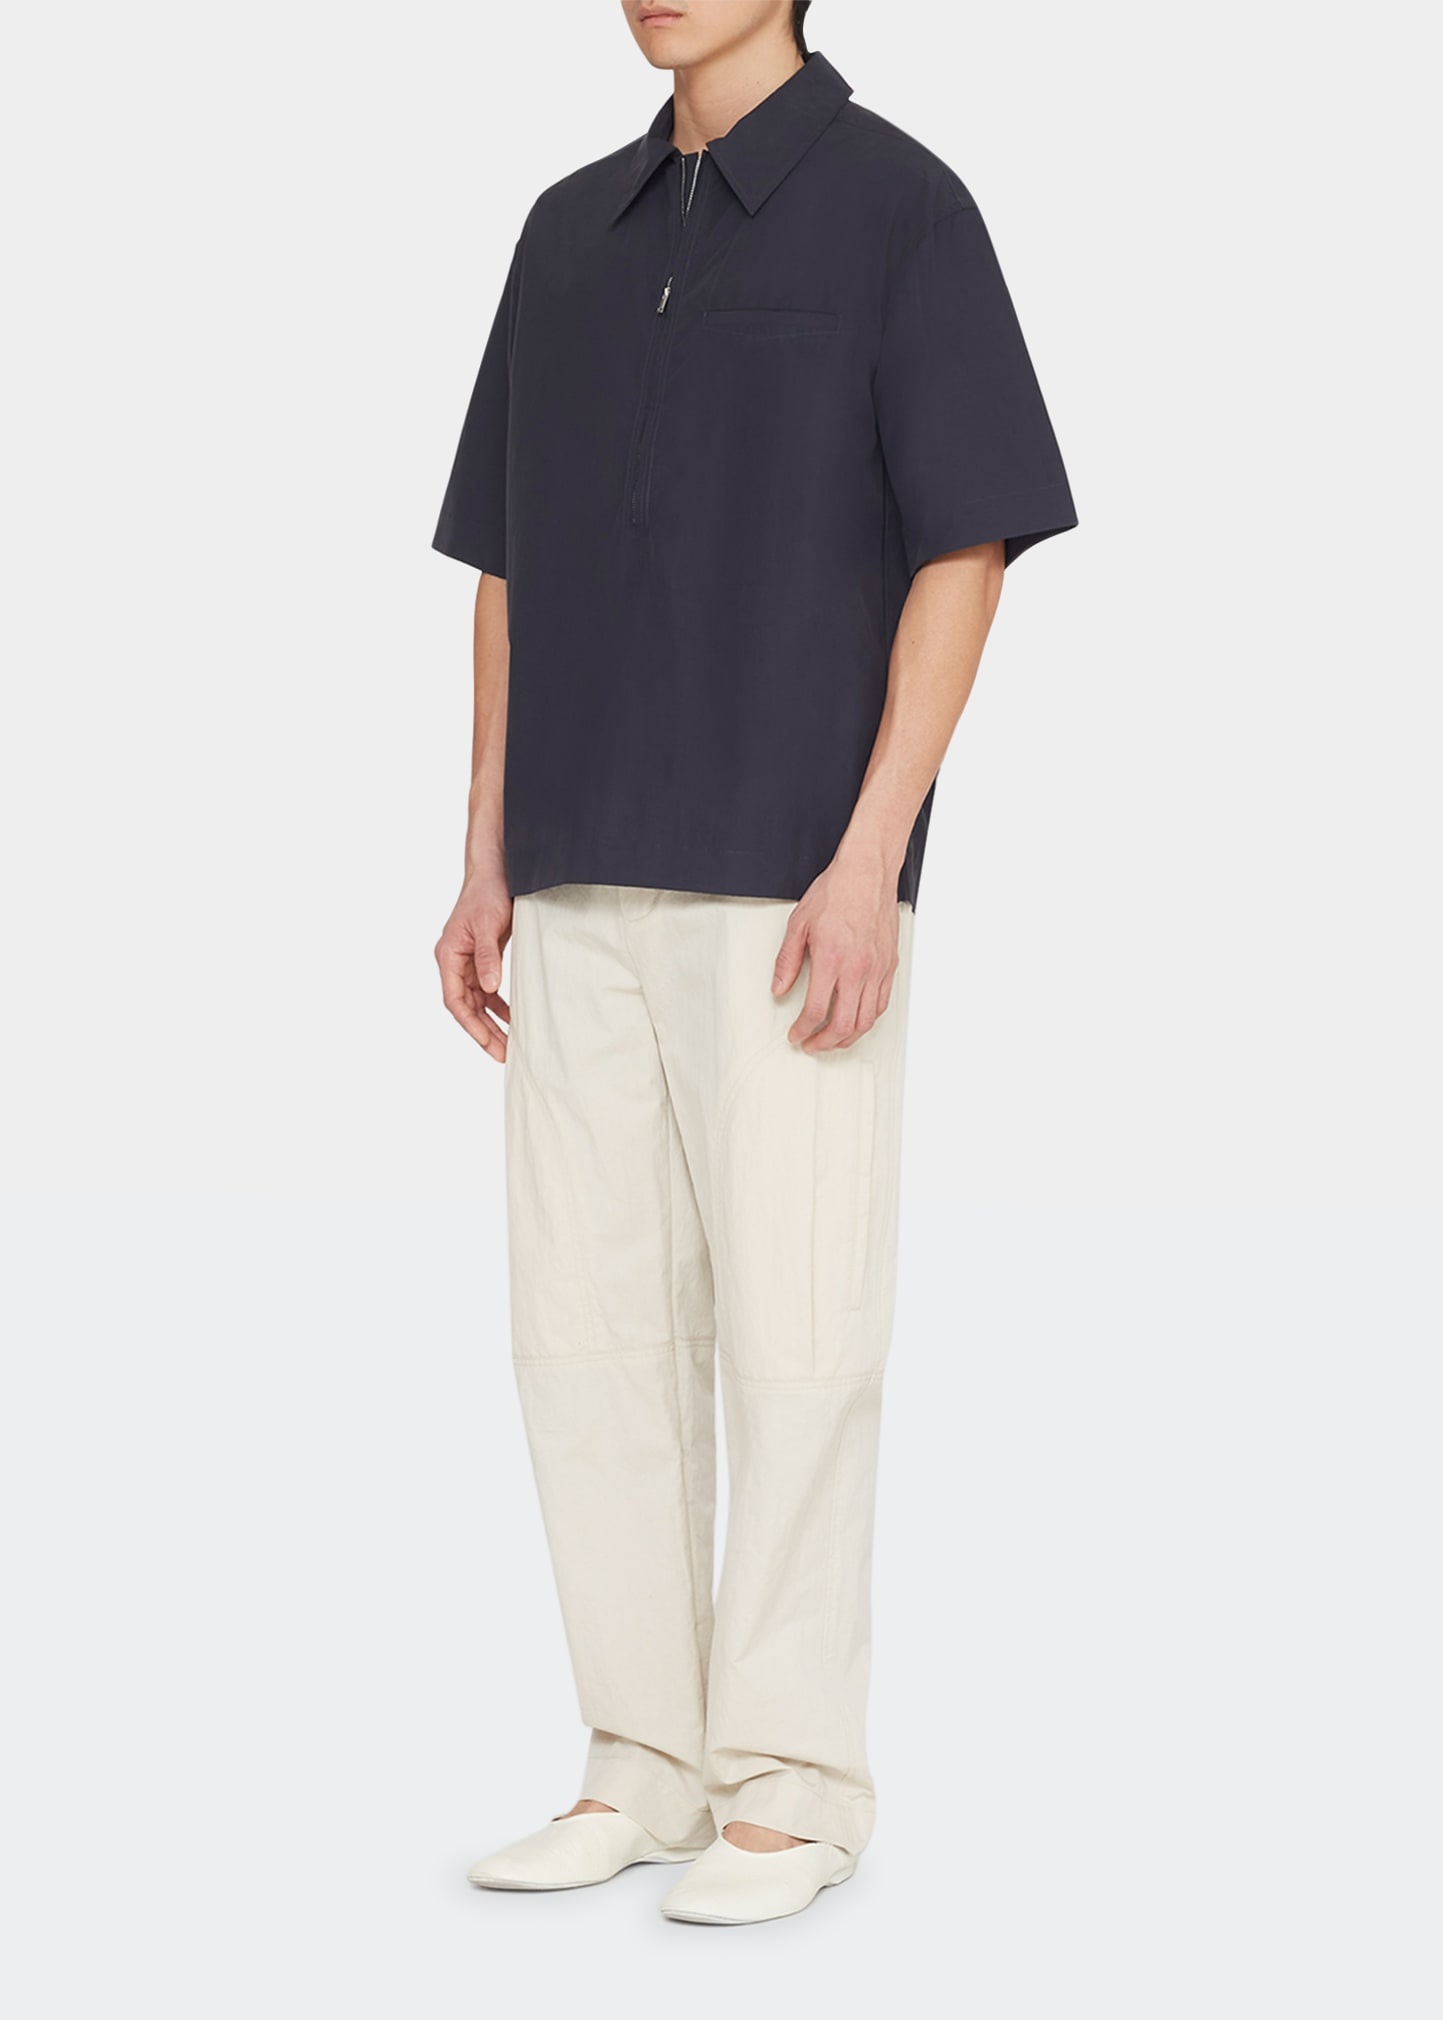 Men's Half-Zip Popover Shirt - 3